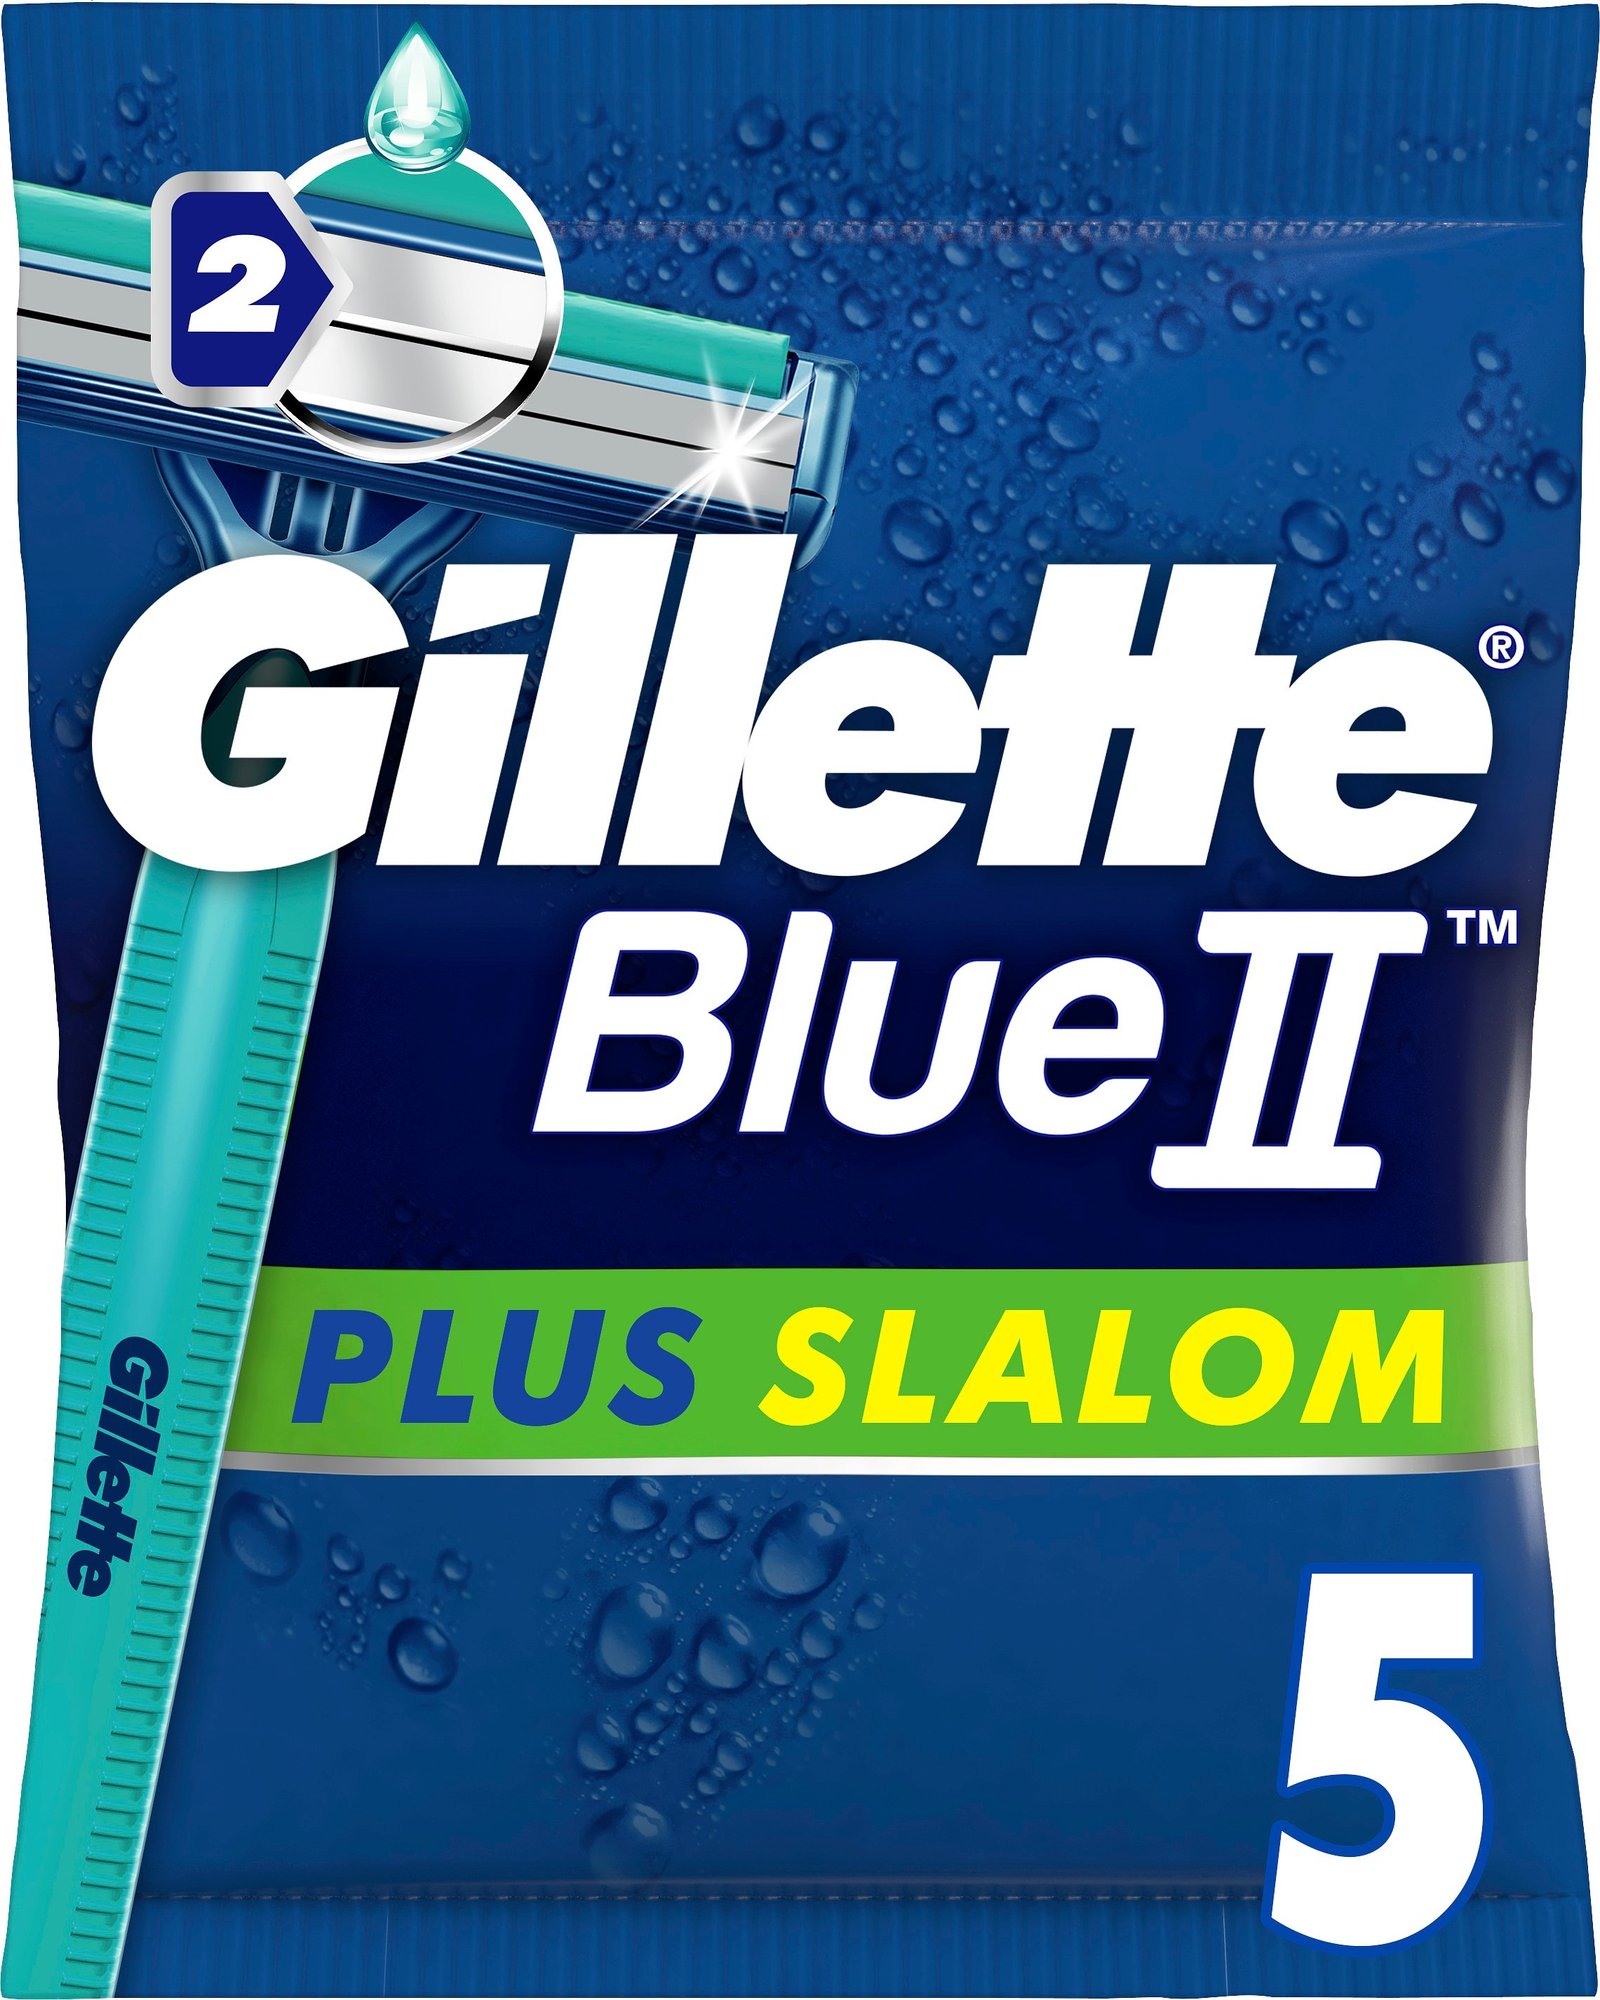 Gillette Blue 2 Plus Slalom Engångsrakhyvlar 5 st